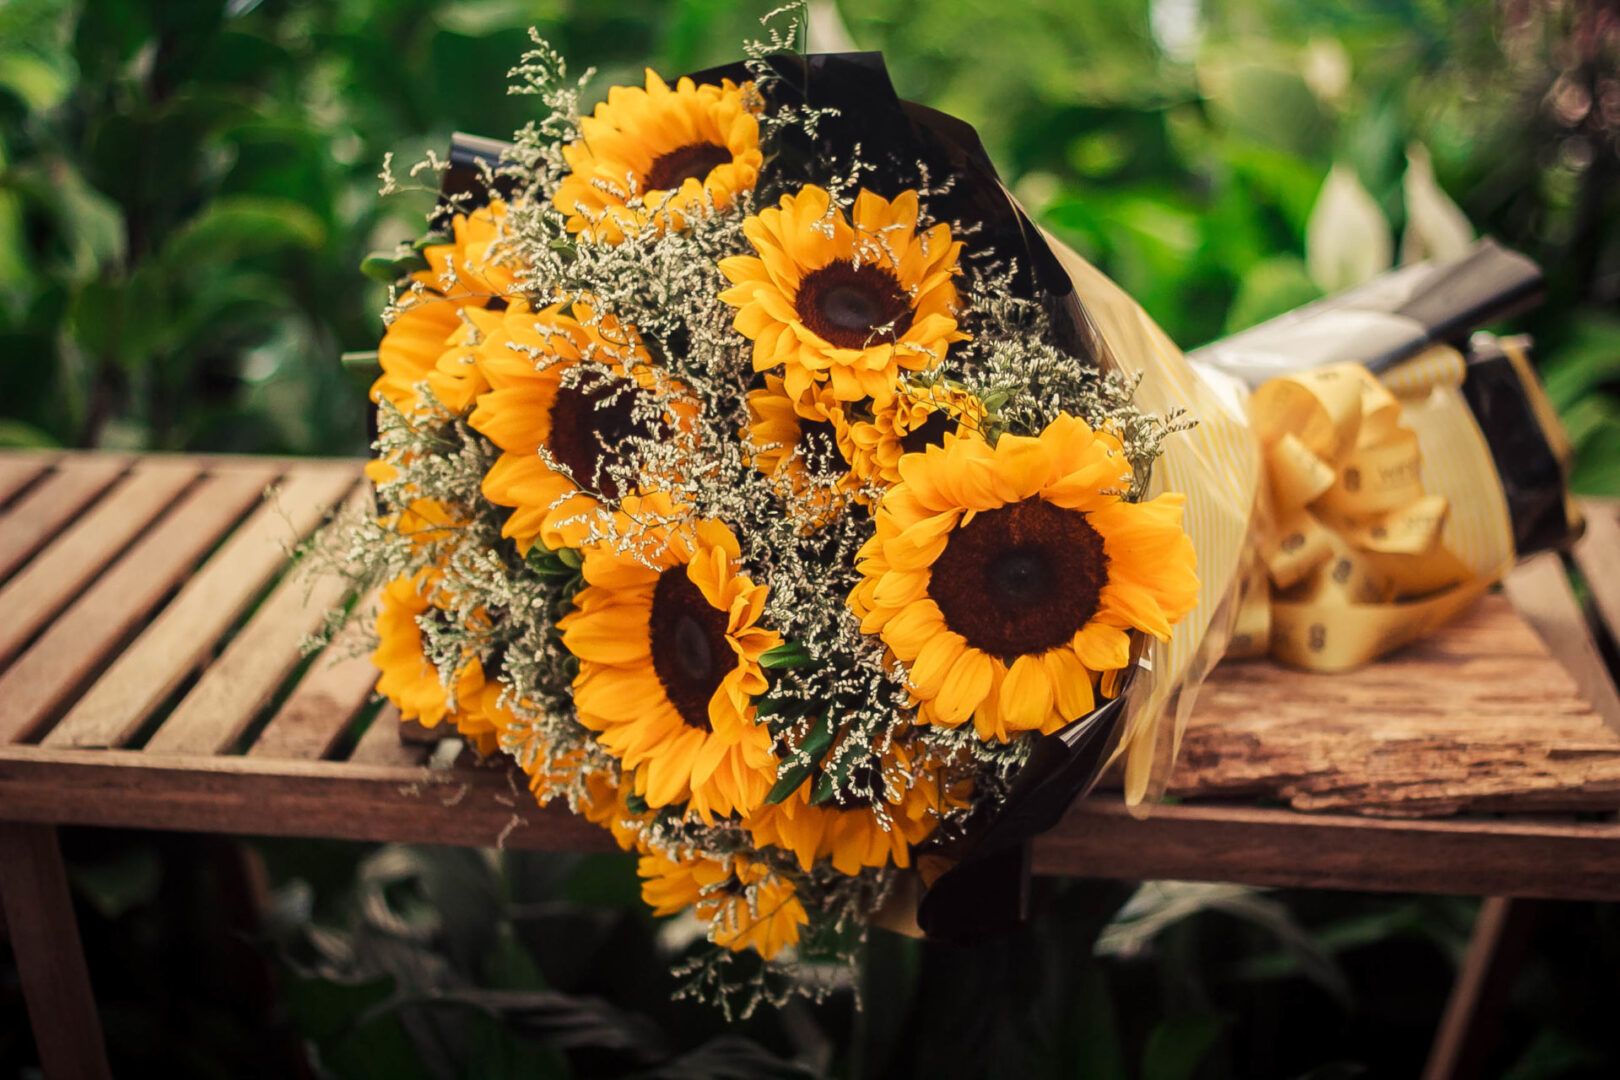 Flores românticas: opções para presentear ou ter em casa em arranjos